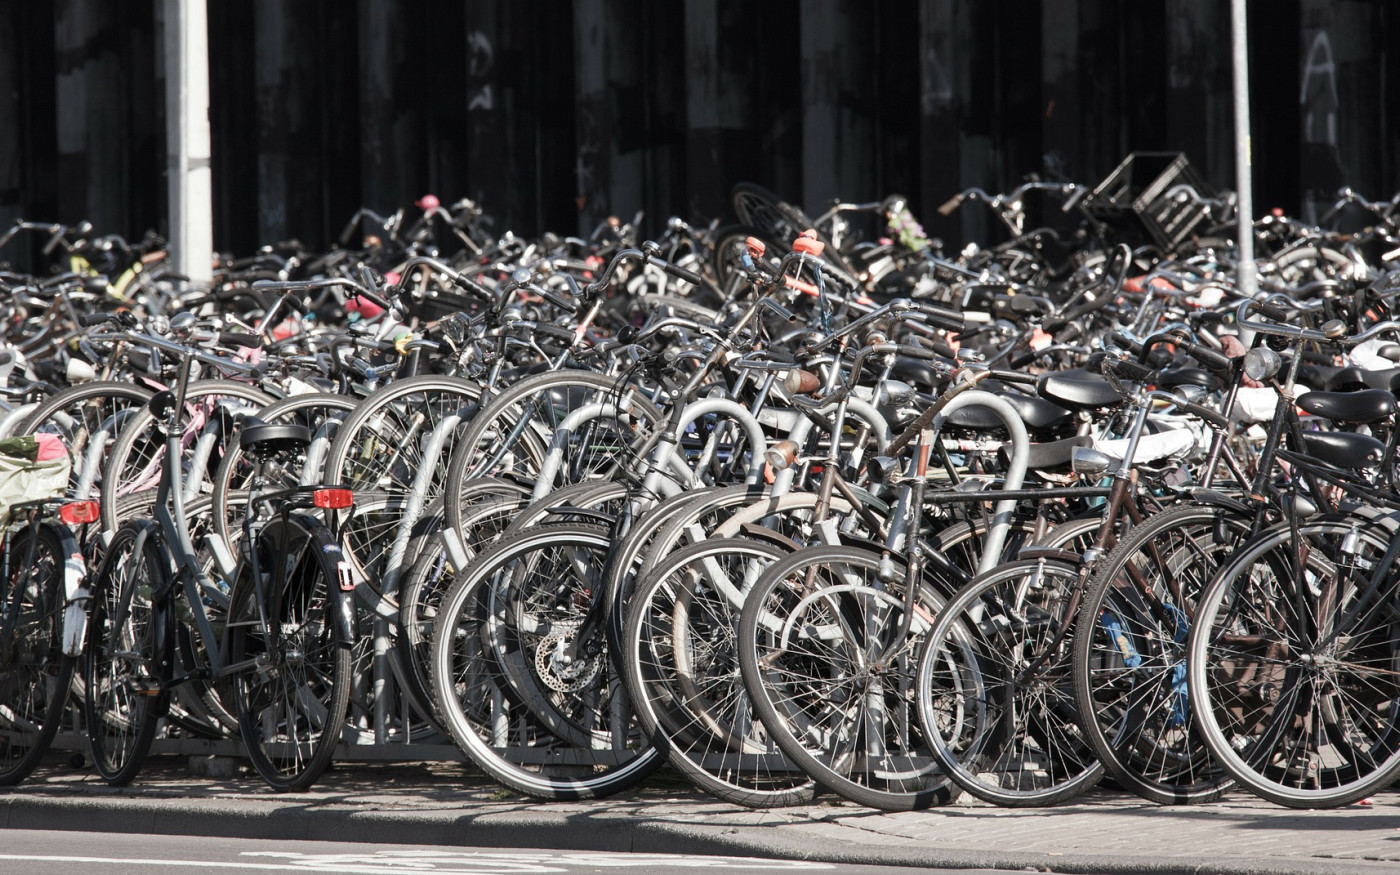 Polizei klärt Serie von Fahrraddiebstählen in Meine auf - Täter (17) gesteht Weiterverkauf an auswärtige LKW-Fahrer in Braunschweig